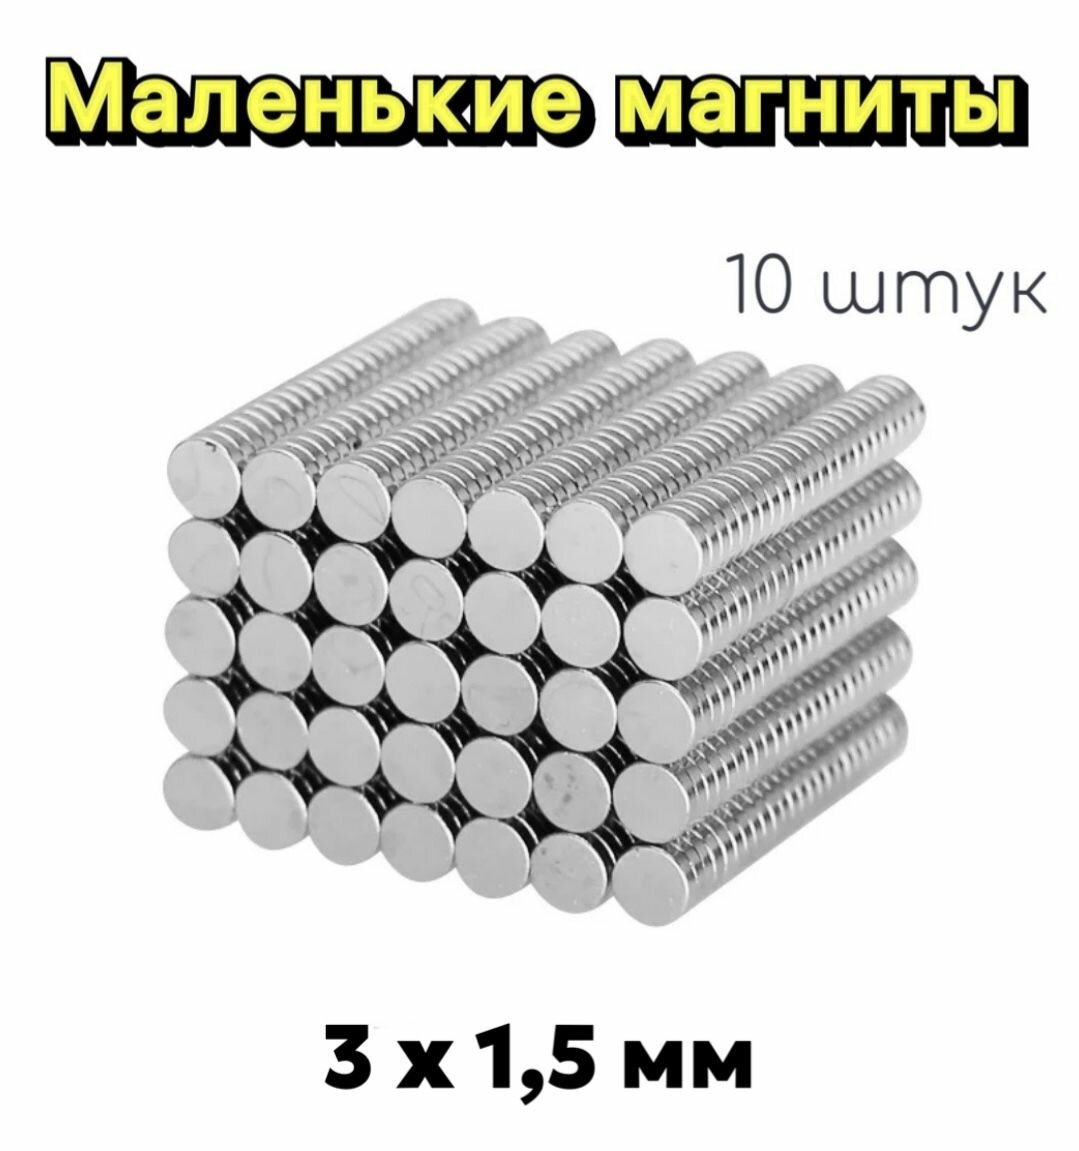 Миниатюрные неодимовые магниты 3 на 15 мм  10 штук/ маленькие неодимовые магниты 10 штук 3 на 15 мм